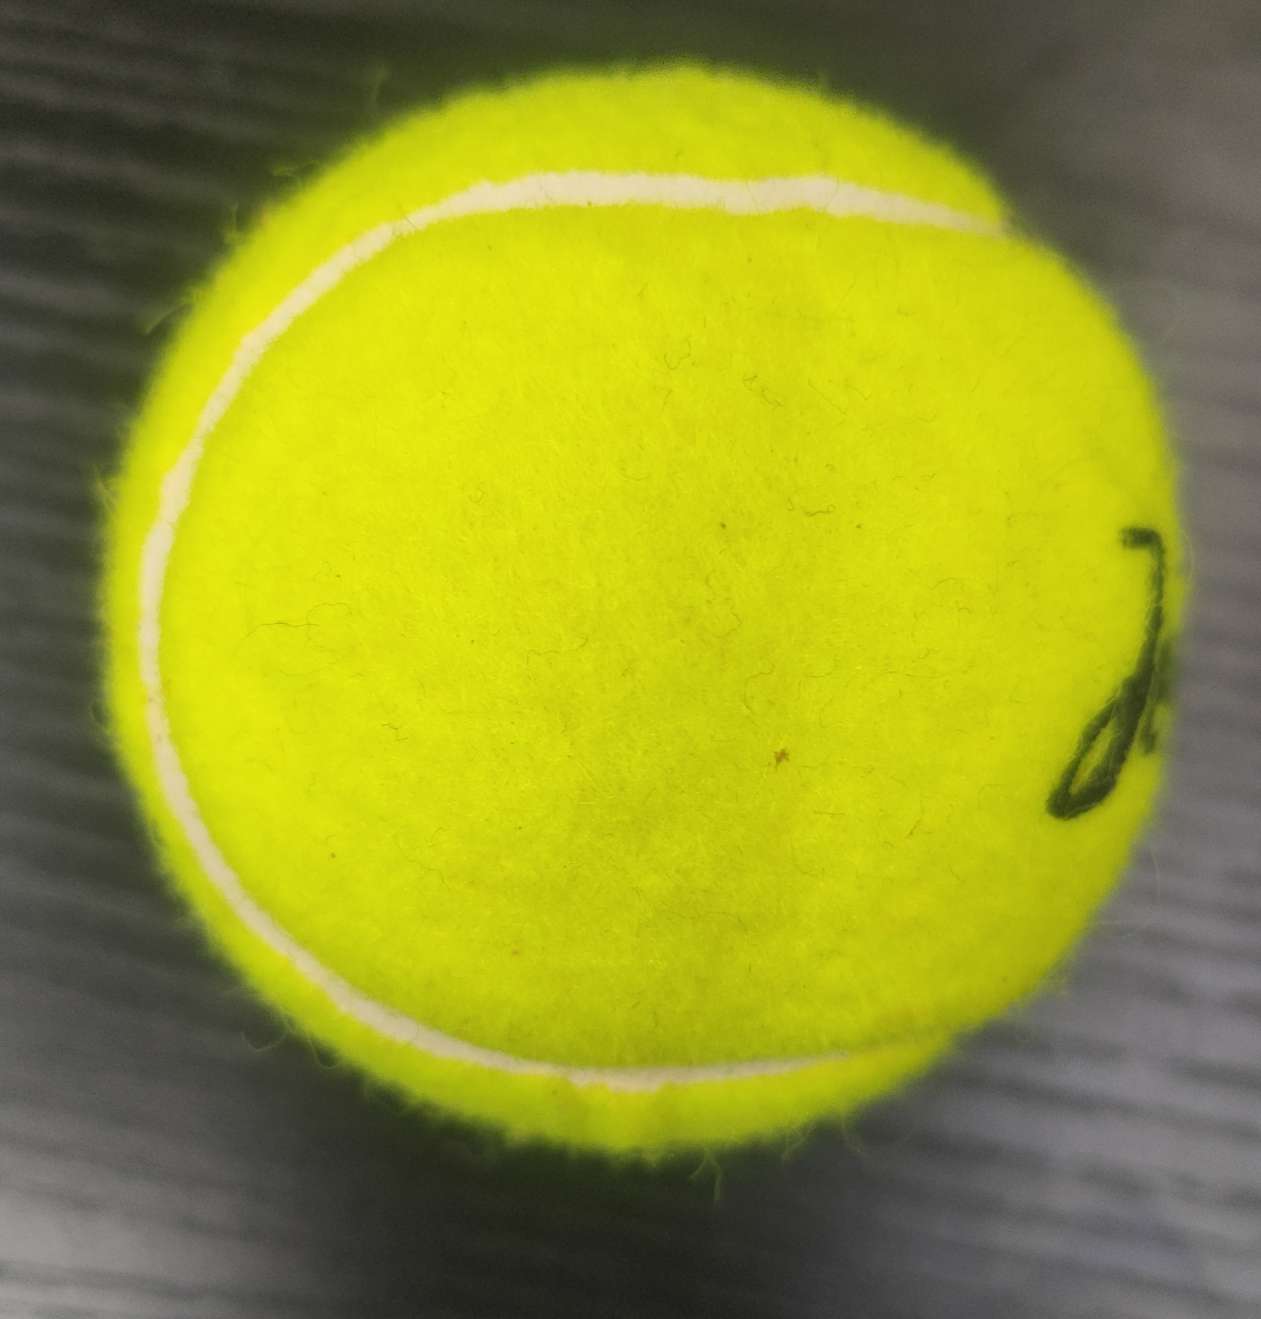 网球Tennis普通级网球训练网球库存网球现货网球网球Tennis普通级网球训练网球库存网球现货网球图